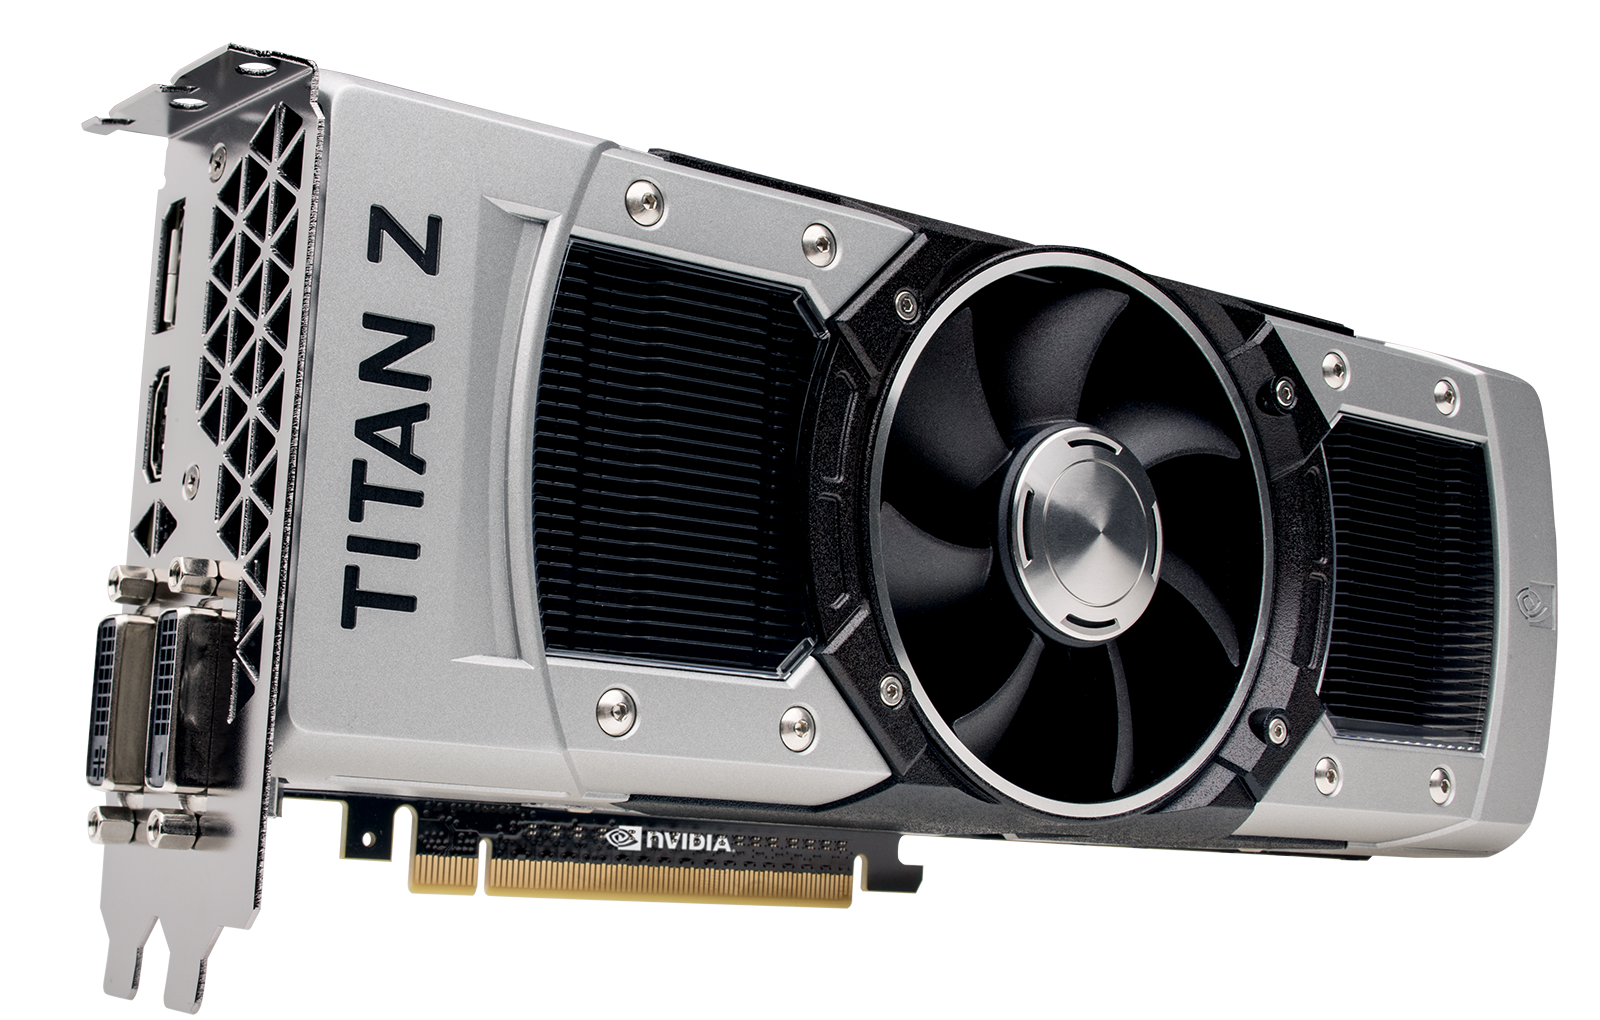 Immagine pubblicata in relazione al seguente contenuto: NVIDIA potrebbe ridurre il prezzo della GeForce GTX TITAN-Z | Nome immagine: news21762_NVIDIA-Geforce-GTX-TITAN-Z_1.png